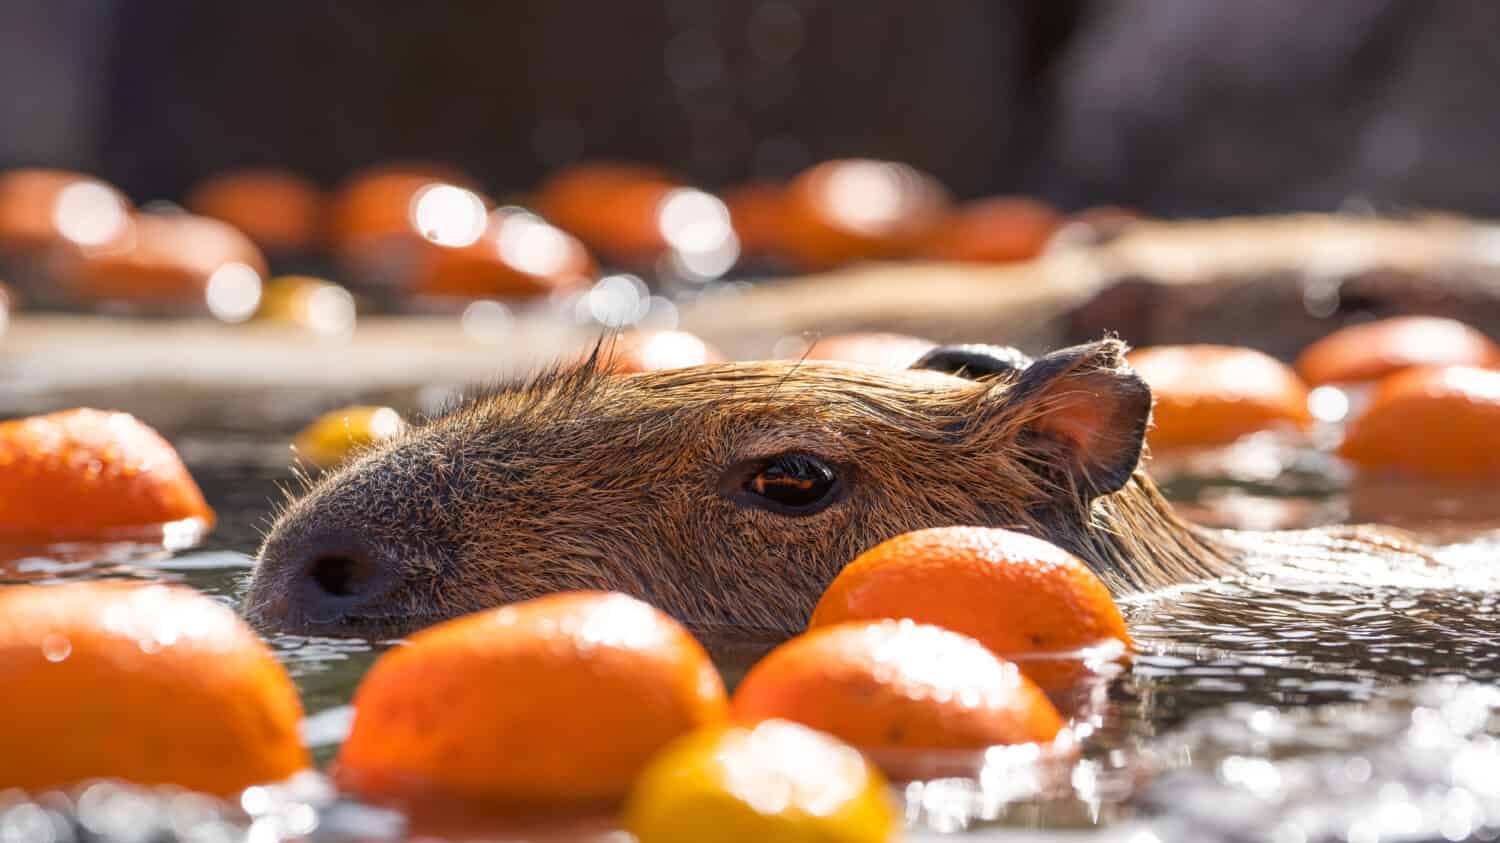 A capybara enjoying the citrus onsen at Izu-shaboten Koen in Izu, Japan 